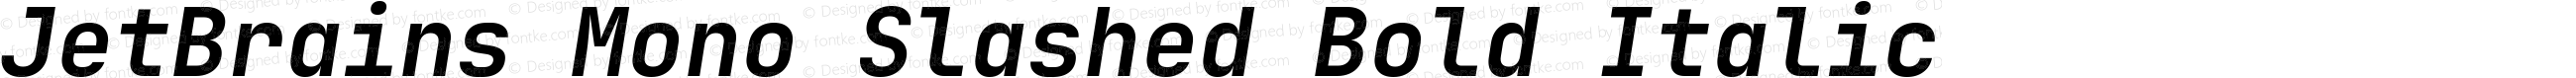 JetBrains Mono Slashed Bold Italic